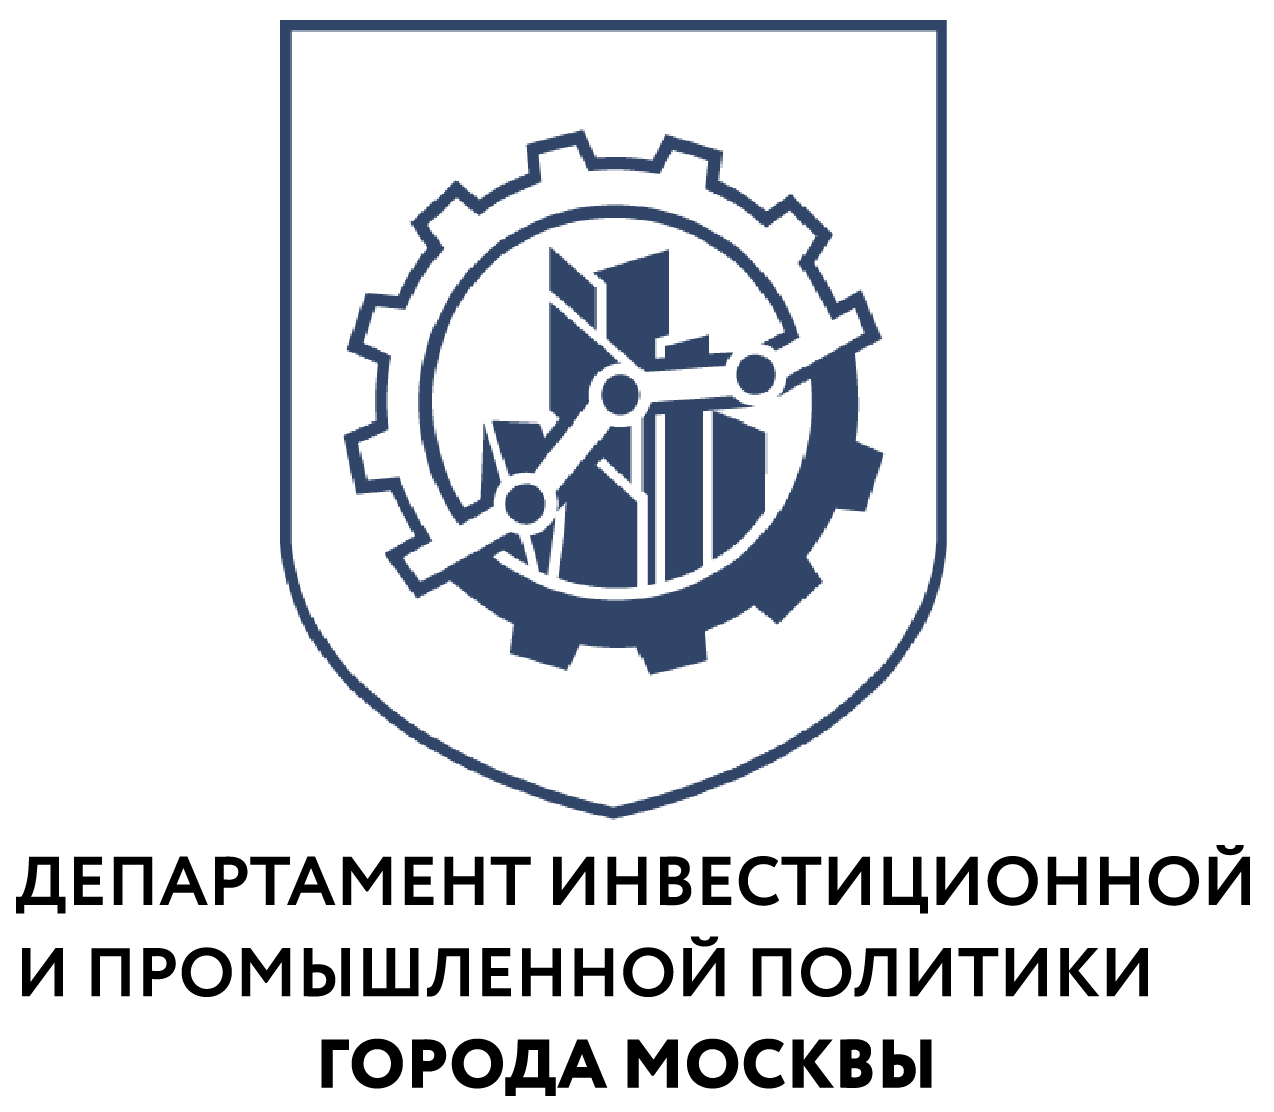 Открой#Моспром: началась регистрация на участие в экскурсиях нового сезона проекта - фото 1